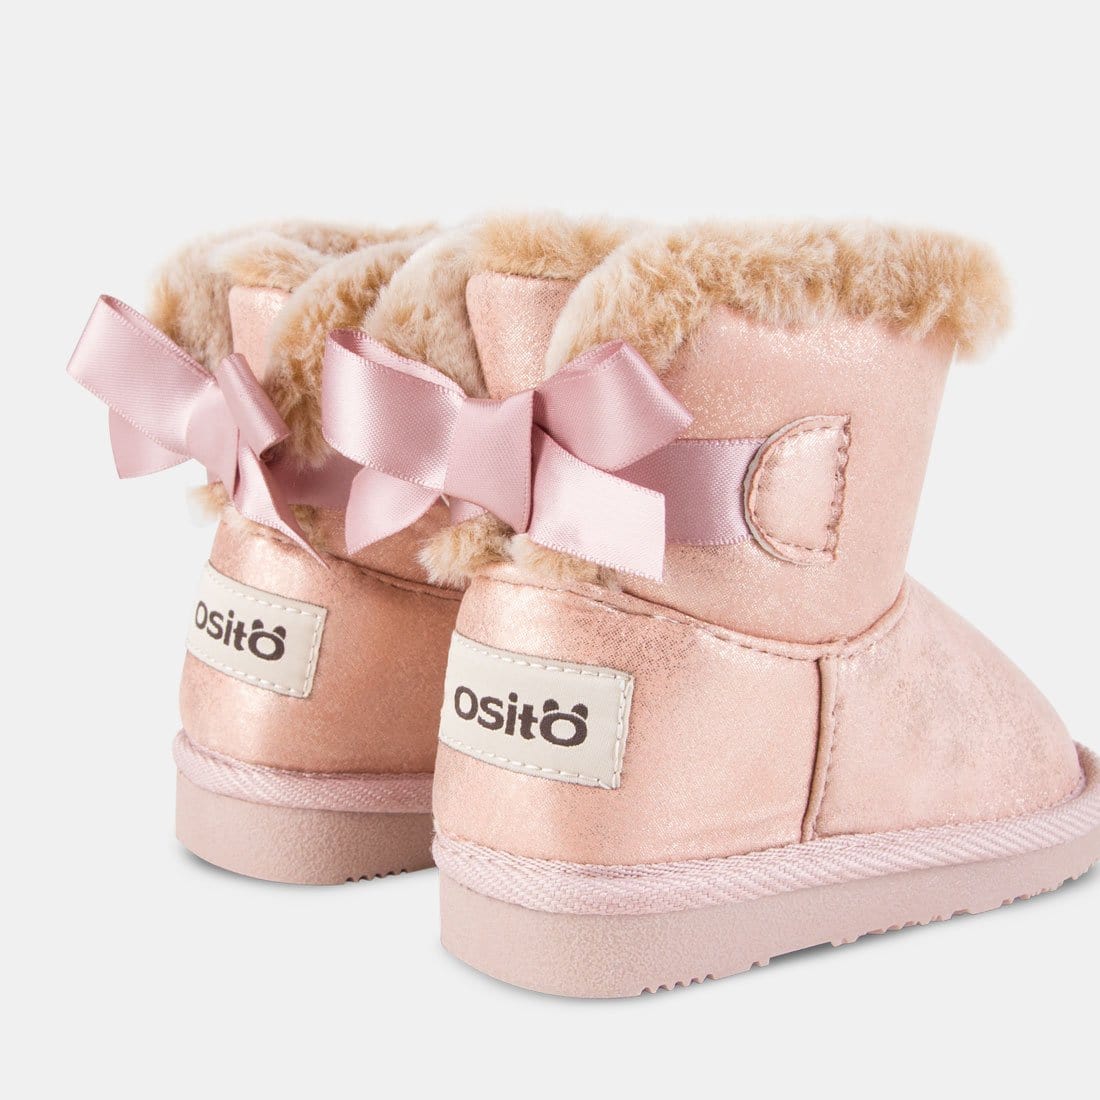 OSITO Shoes Botas Australianas de Bebé Metalizado Rosa